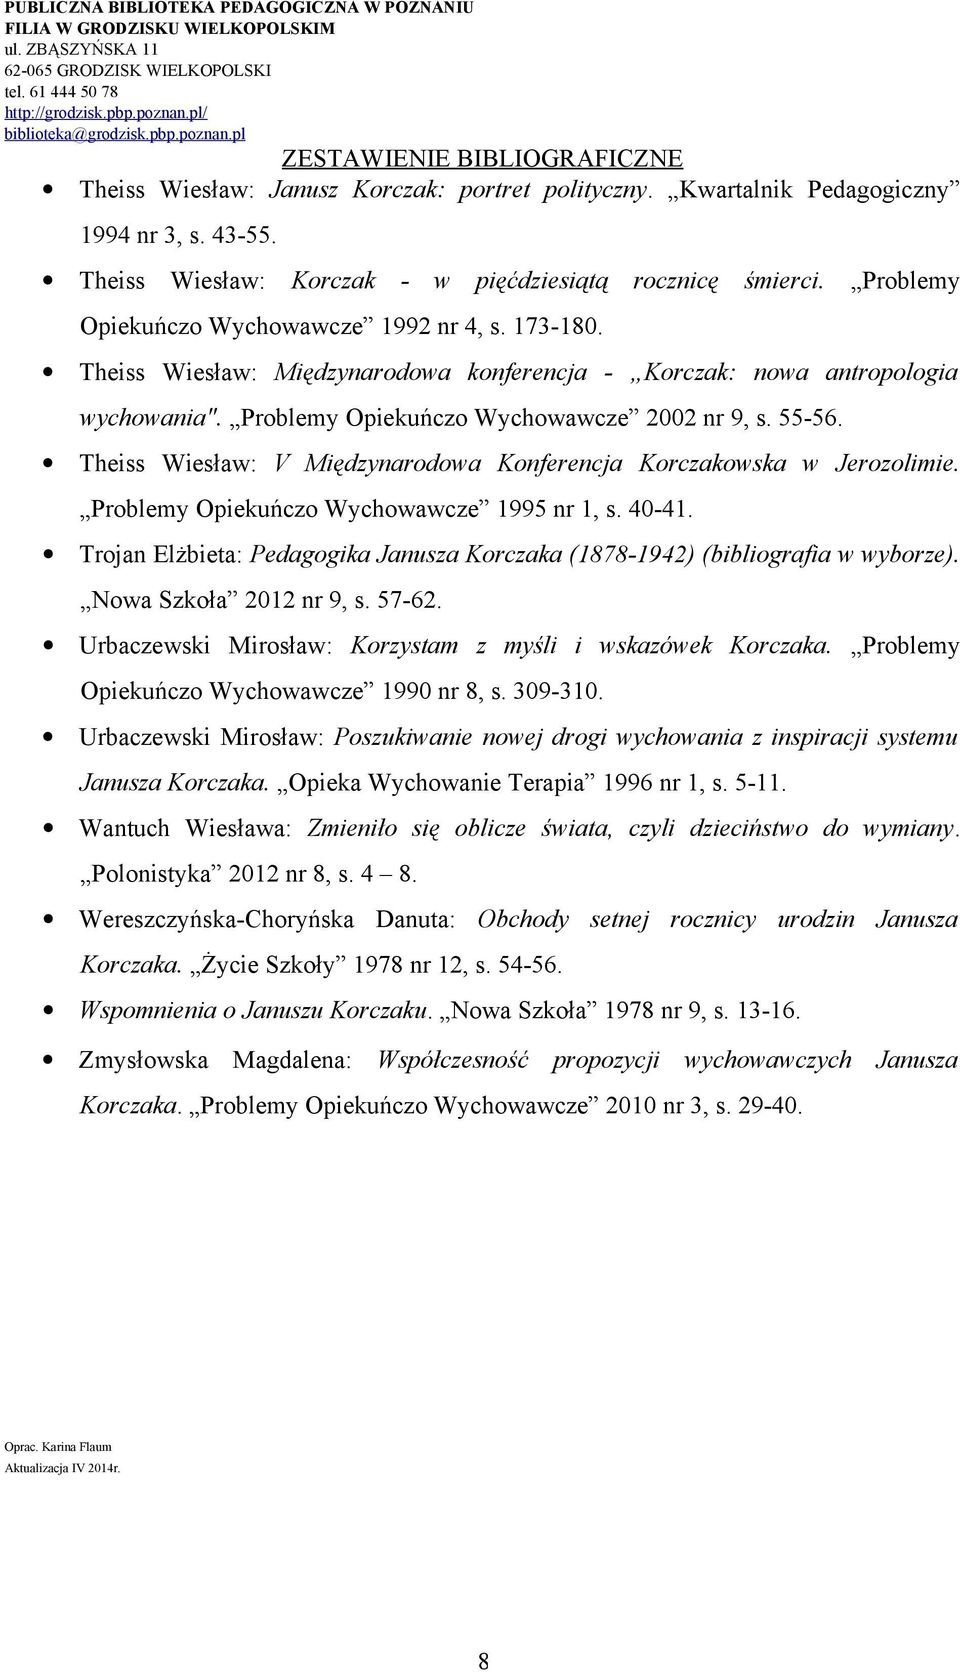 Theiss Wiesław: V Międzynarodowa Konferencja Korczakowska w Jerozolimie. Problemy Opiekuńczo Wychowawcze 1995 nr 1, s. 40-41.